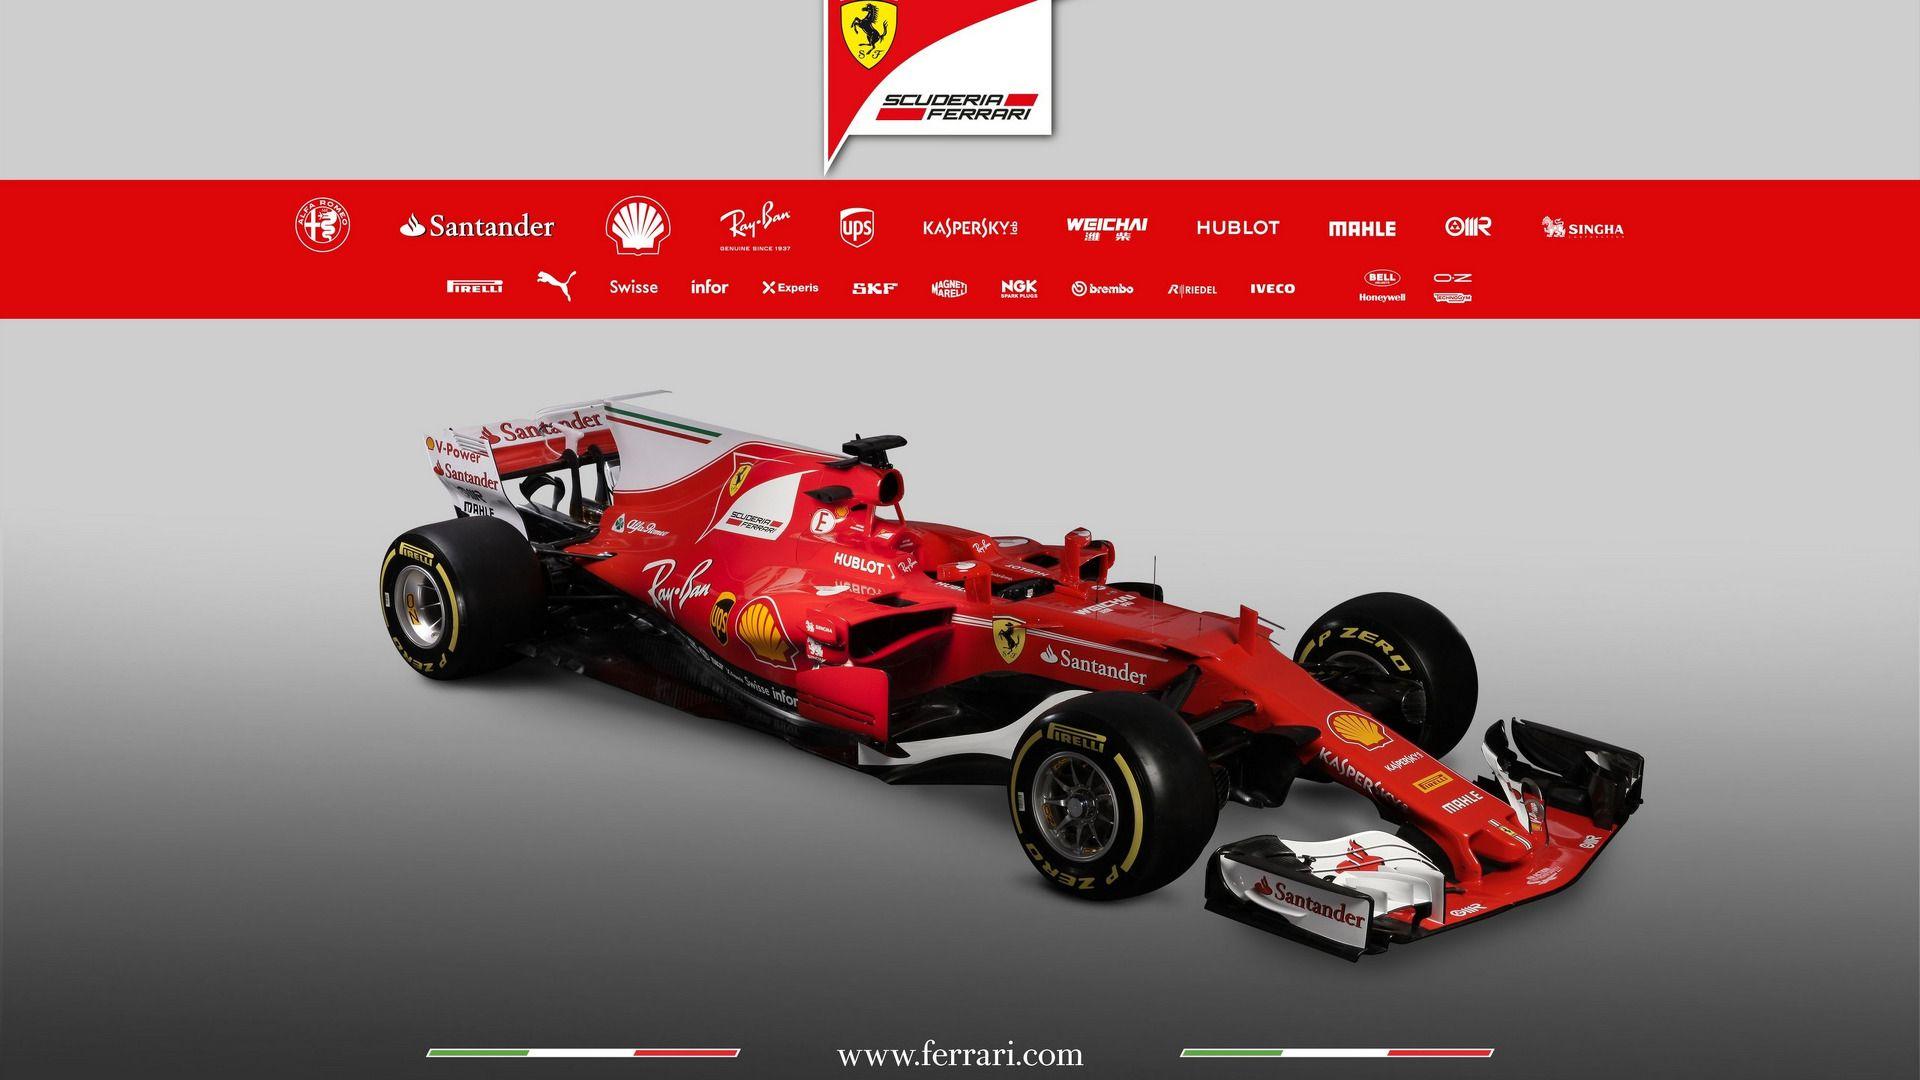 Ferrari presents its 2017 F1 car, the SF70H